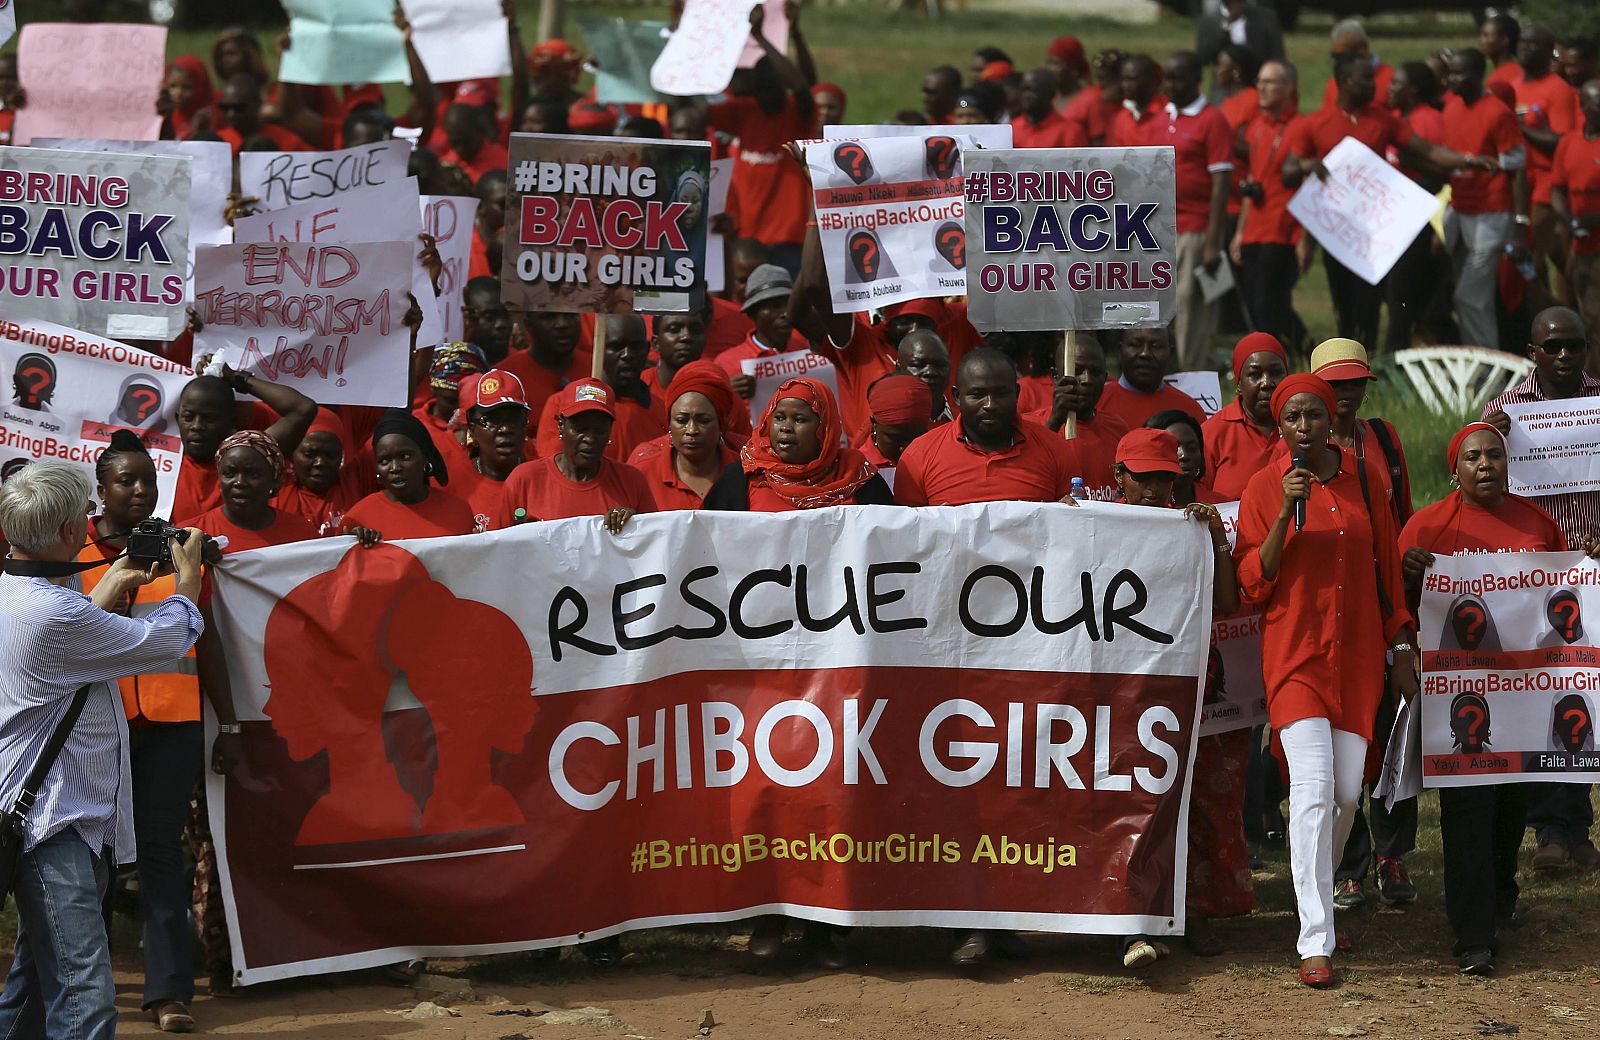 Una de las manifestaciones que exige la liberación de las niñas secuestradas por Boko Haram bajo el lema "Bring Back Our Girls"